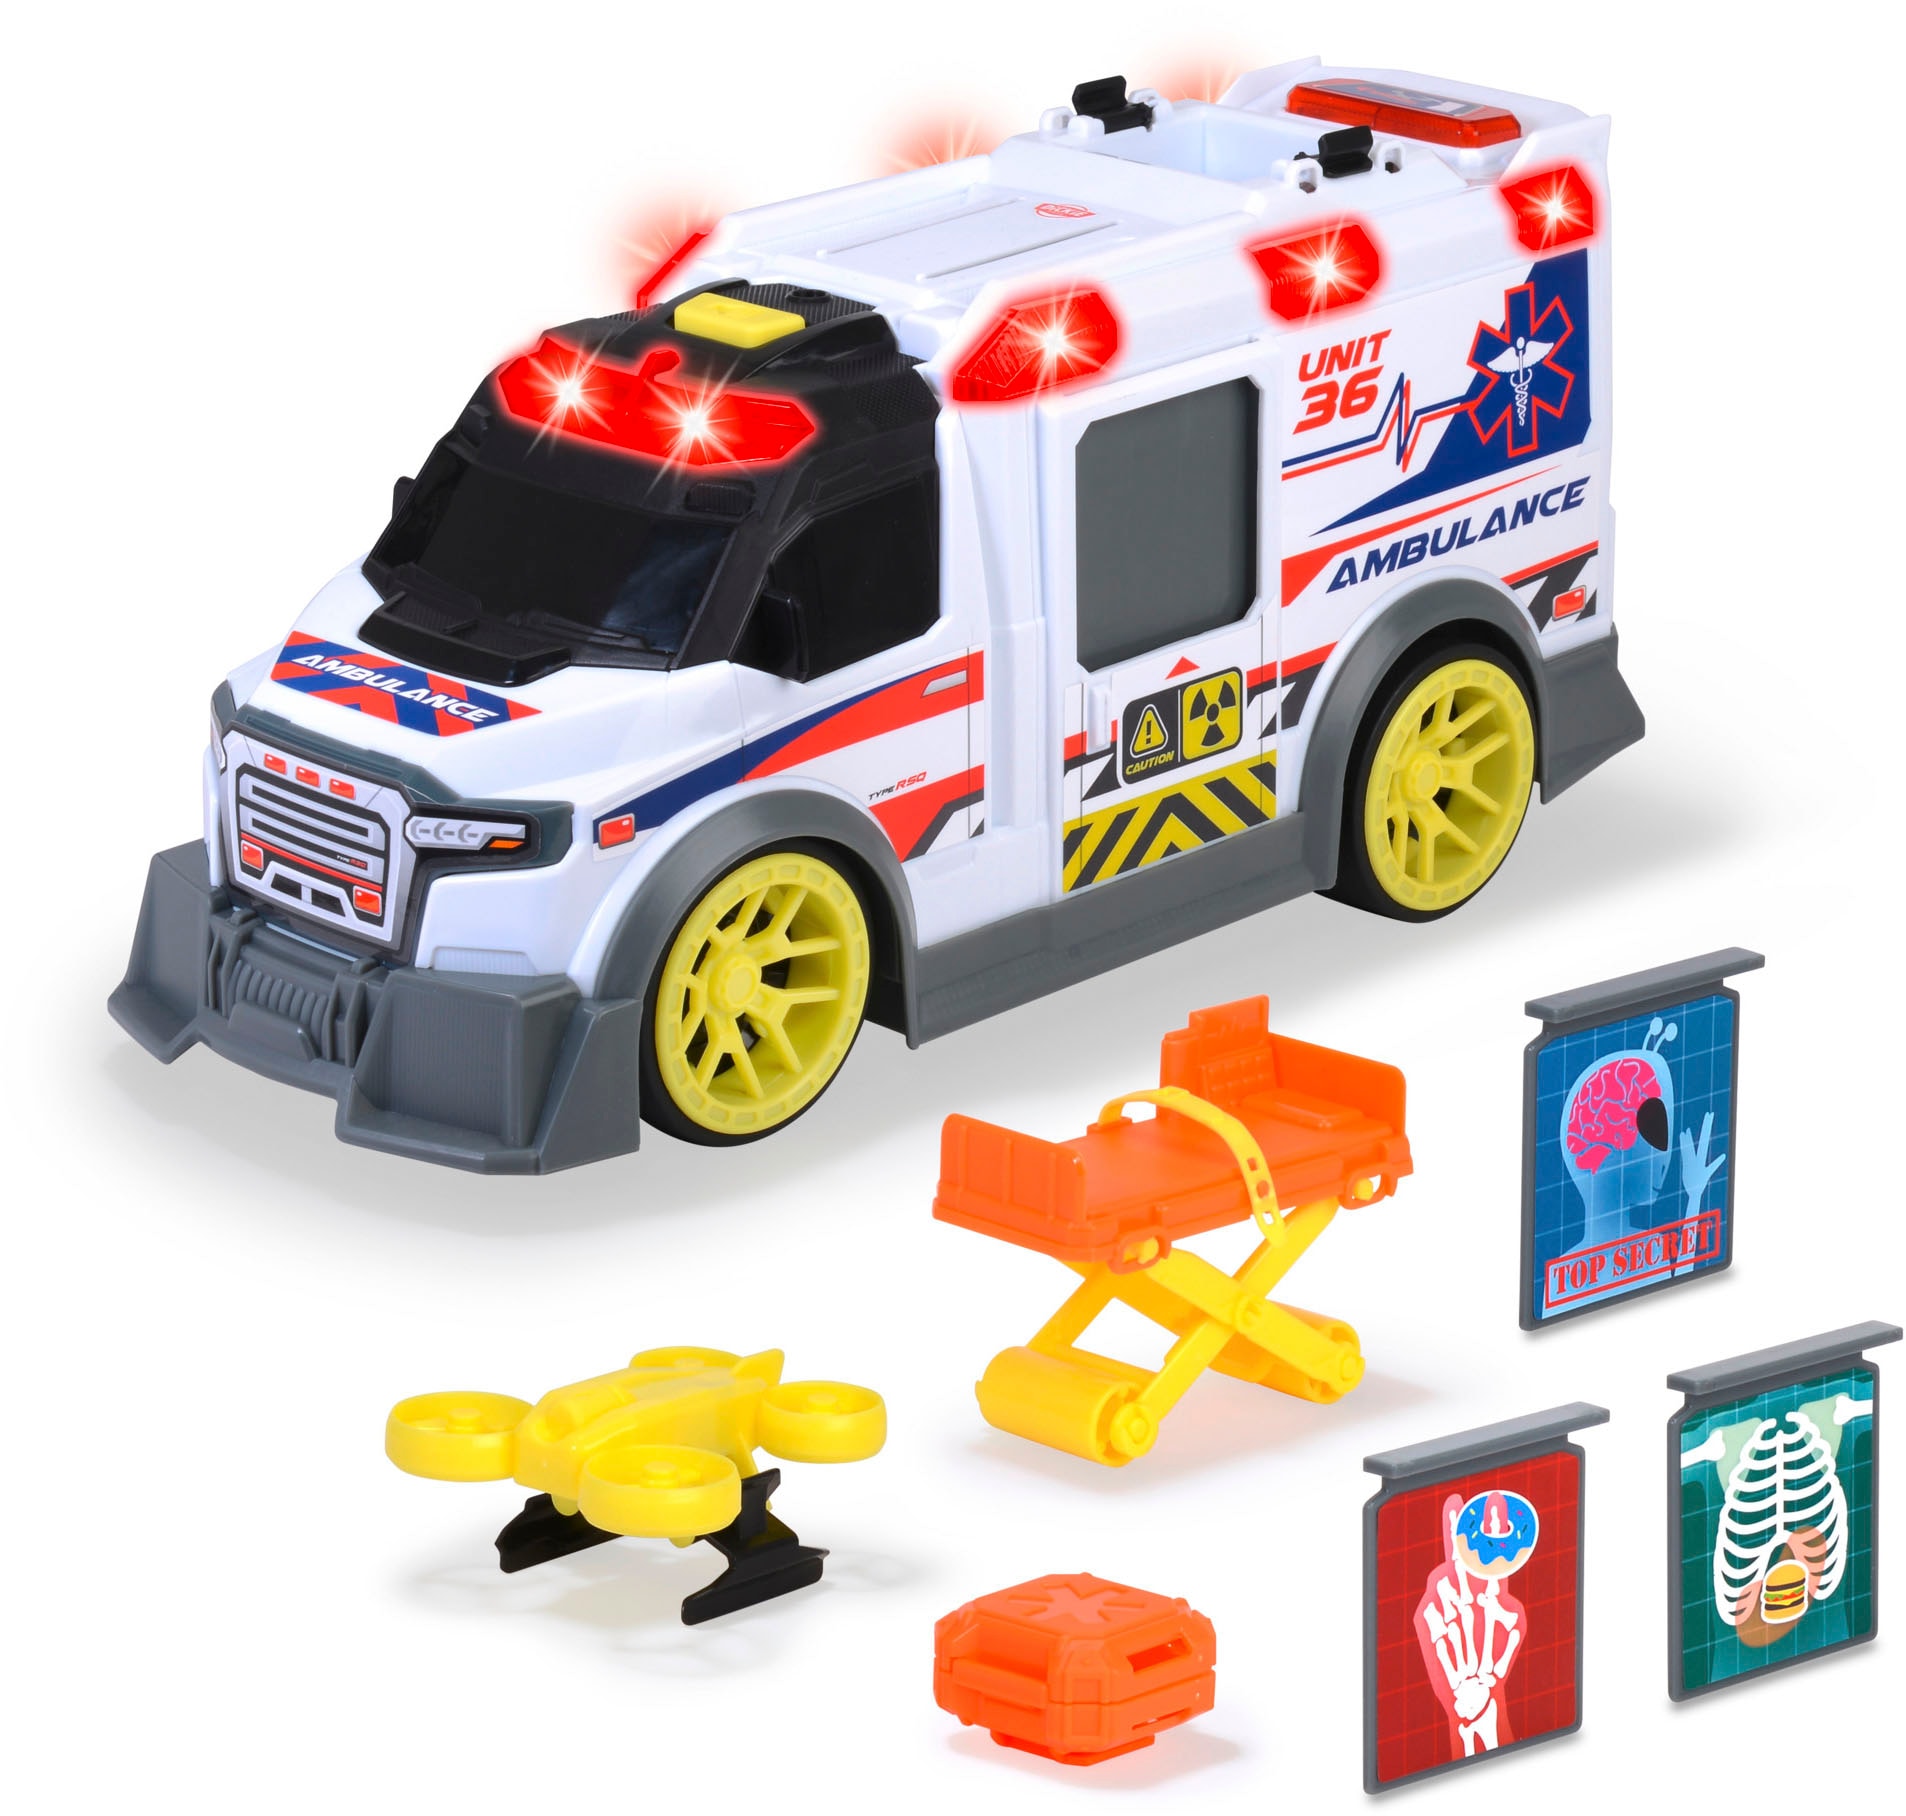 Spielzeug-Krankenwagen »Ambulance«, mit Licht & Sound